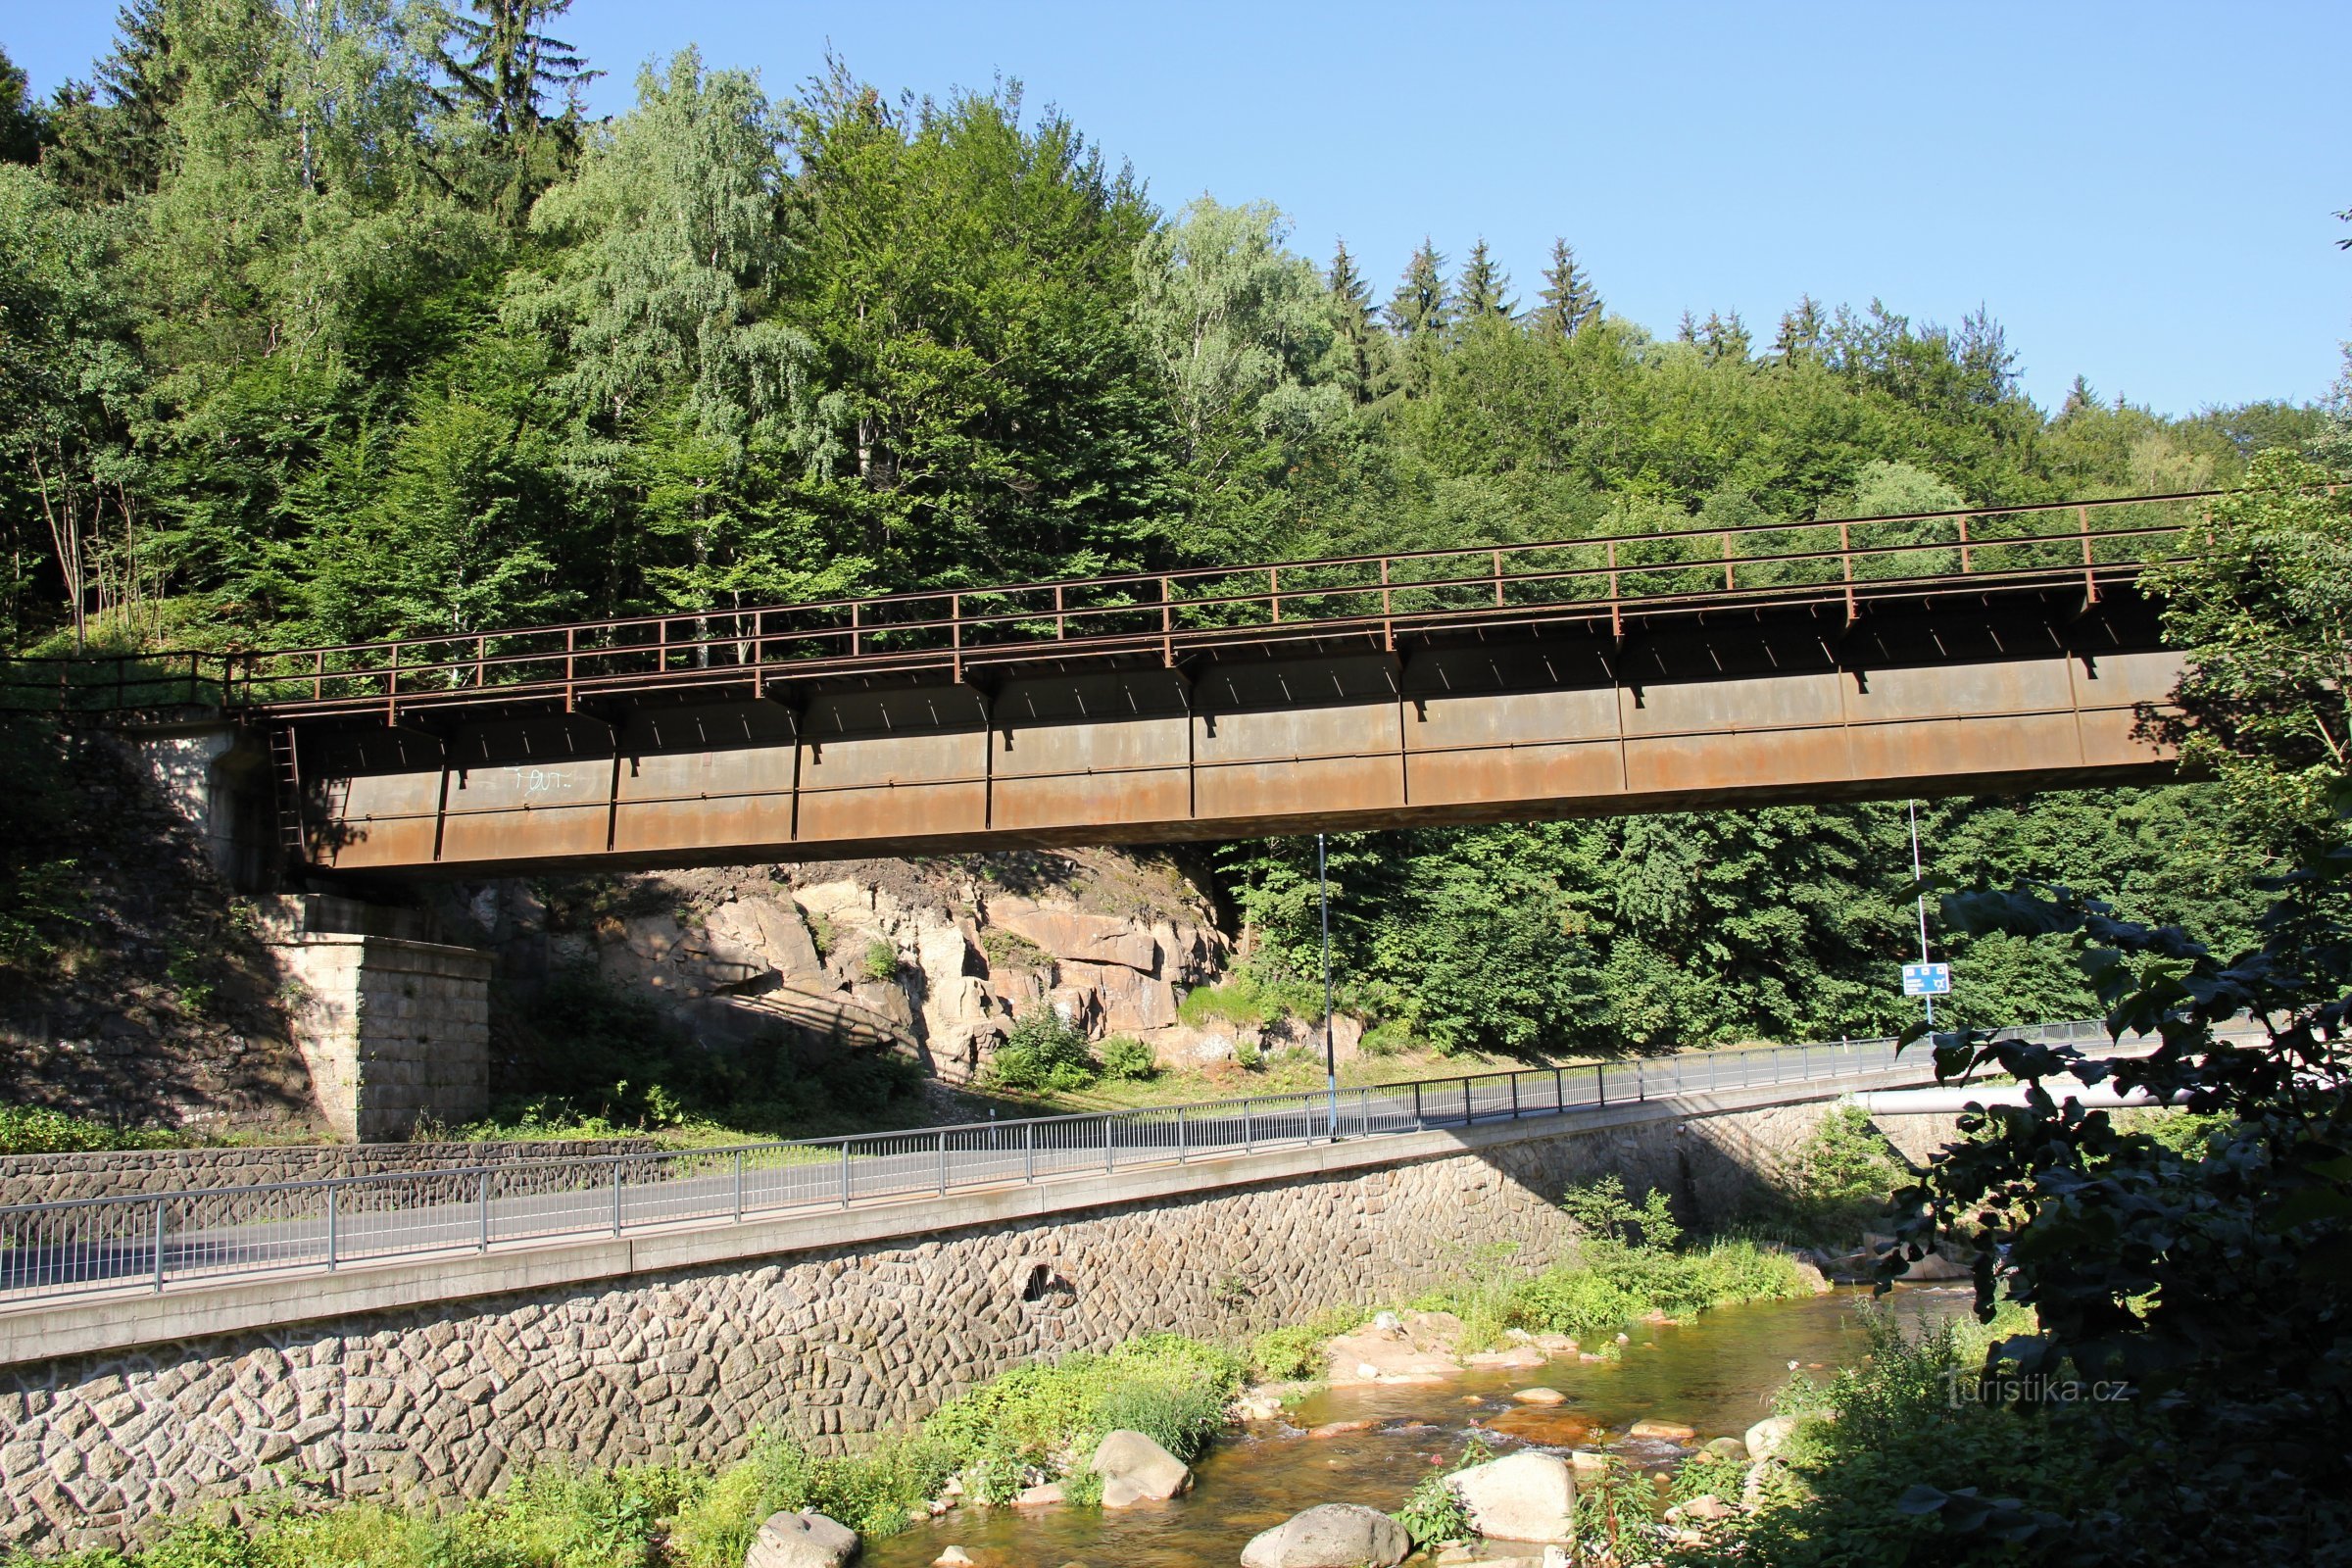 cầu đường sắt qua Kamenice